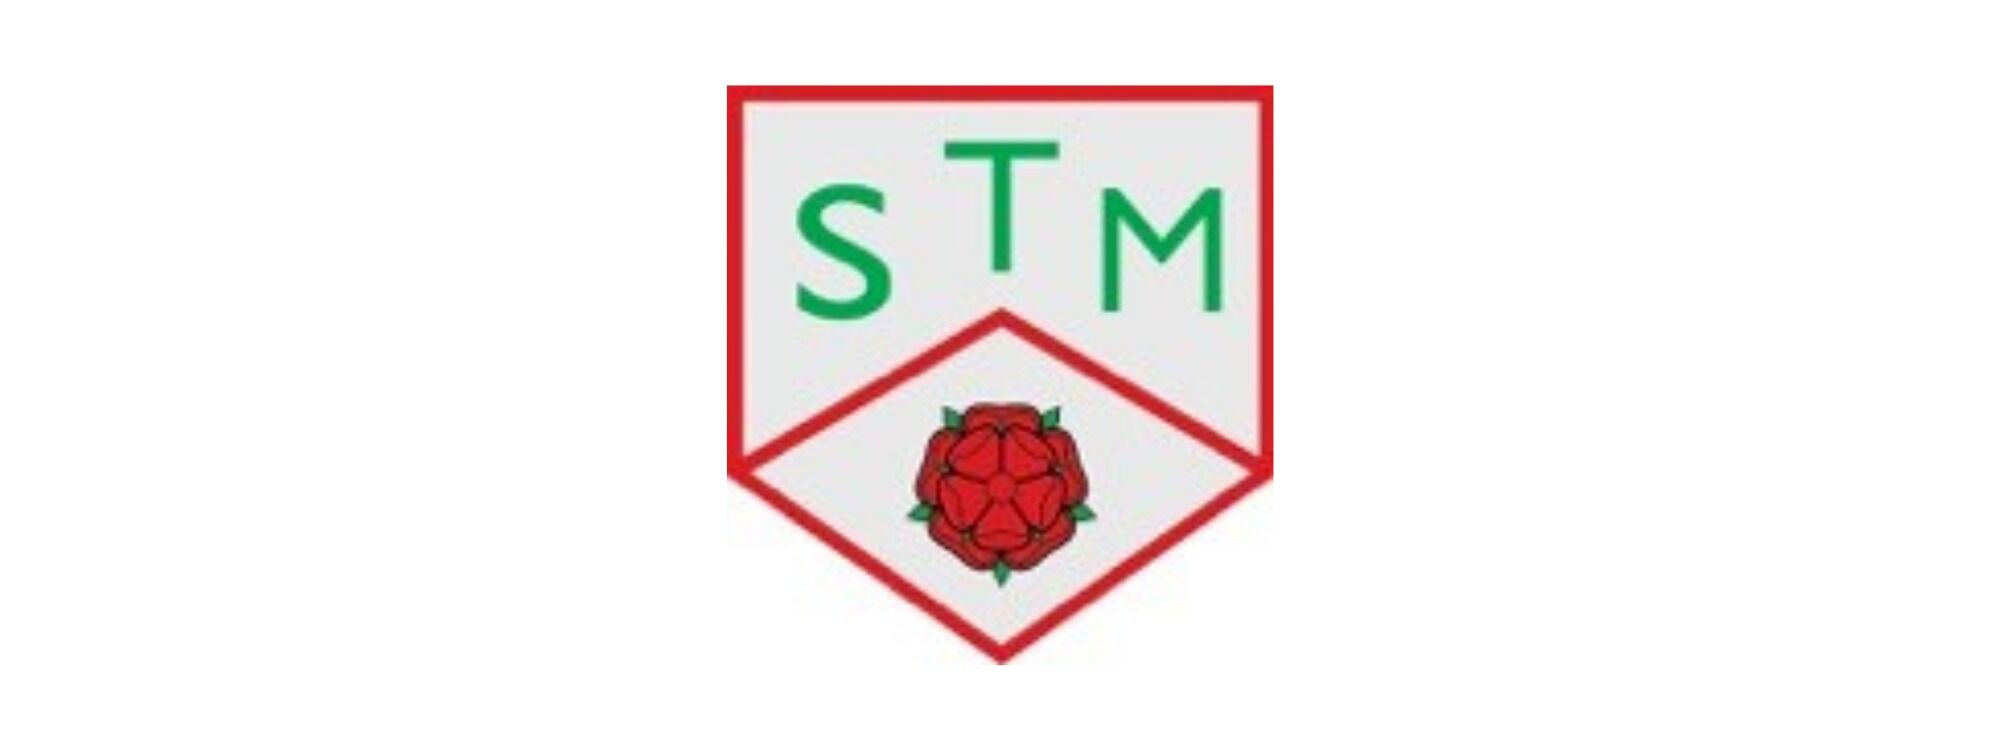 Stm school logo header